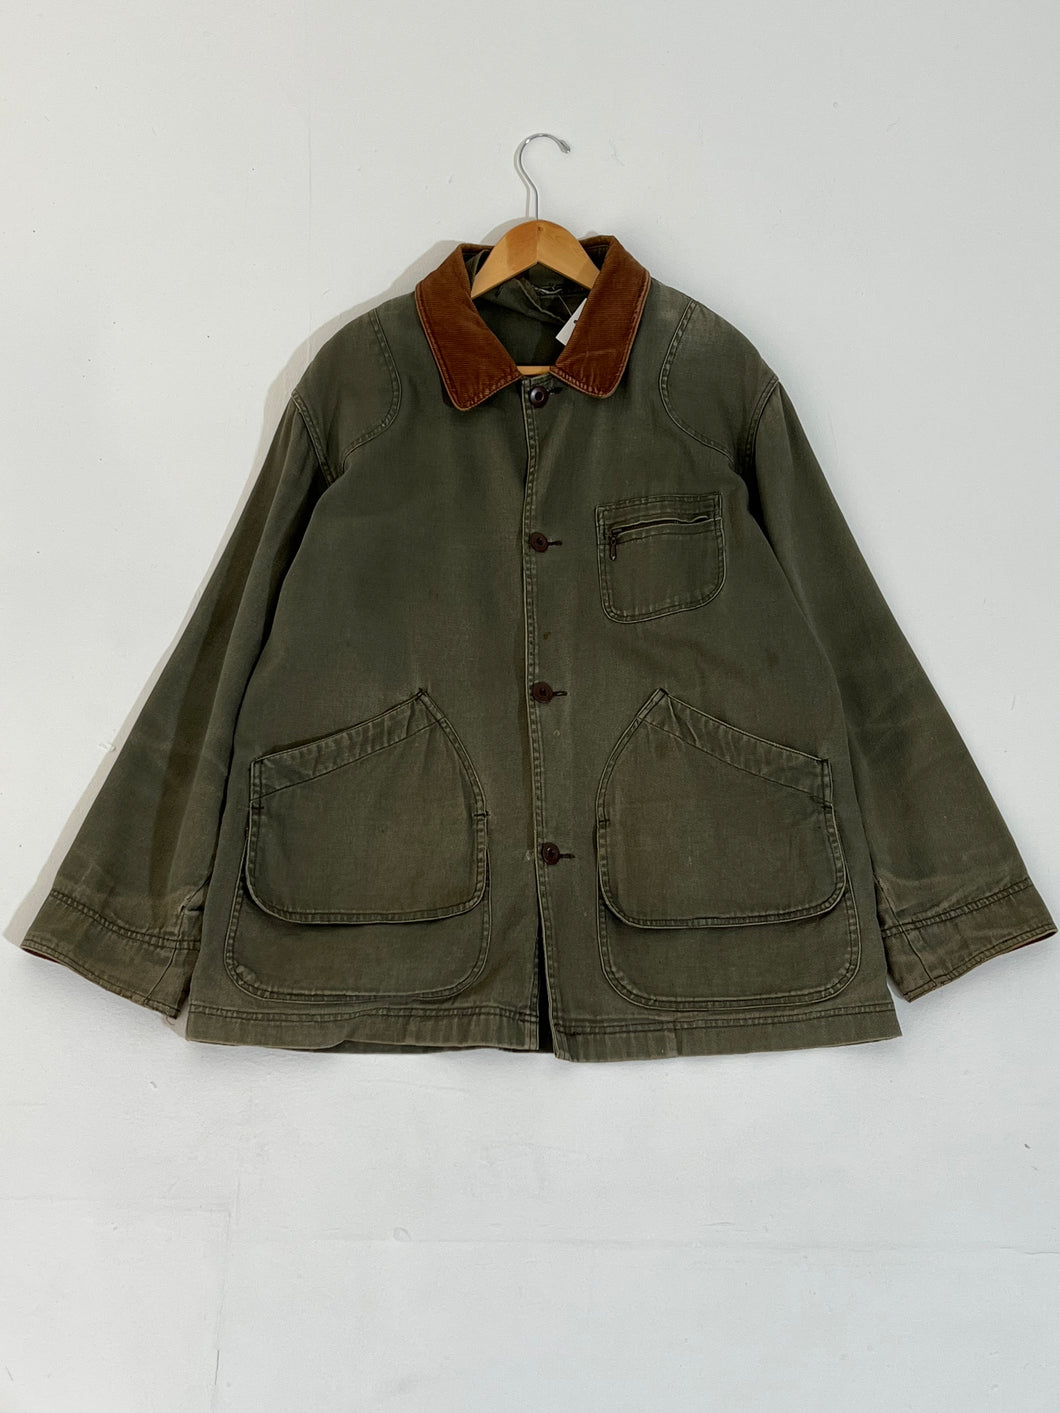 Vintage Olive Green Work Military Jacket